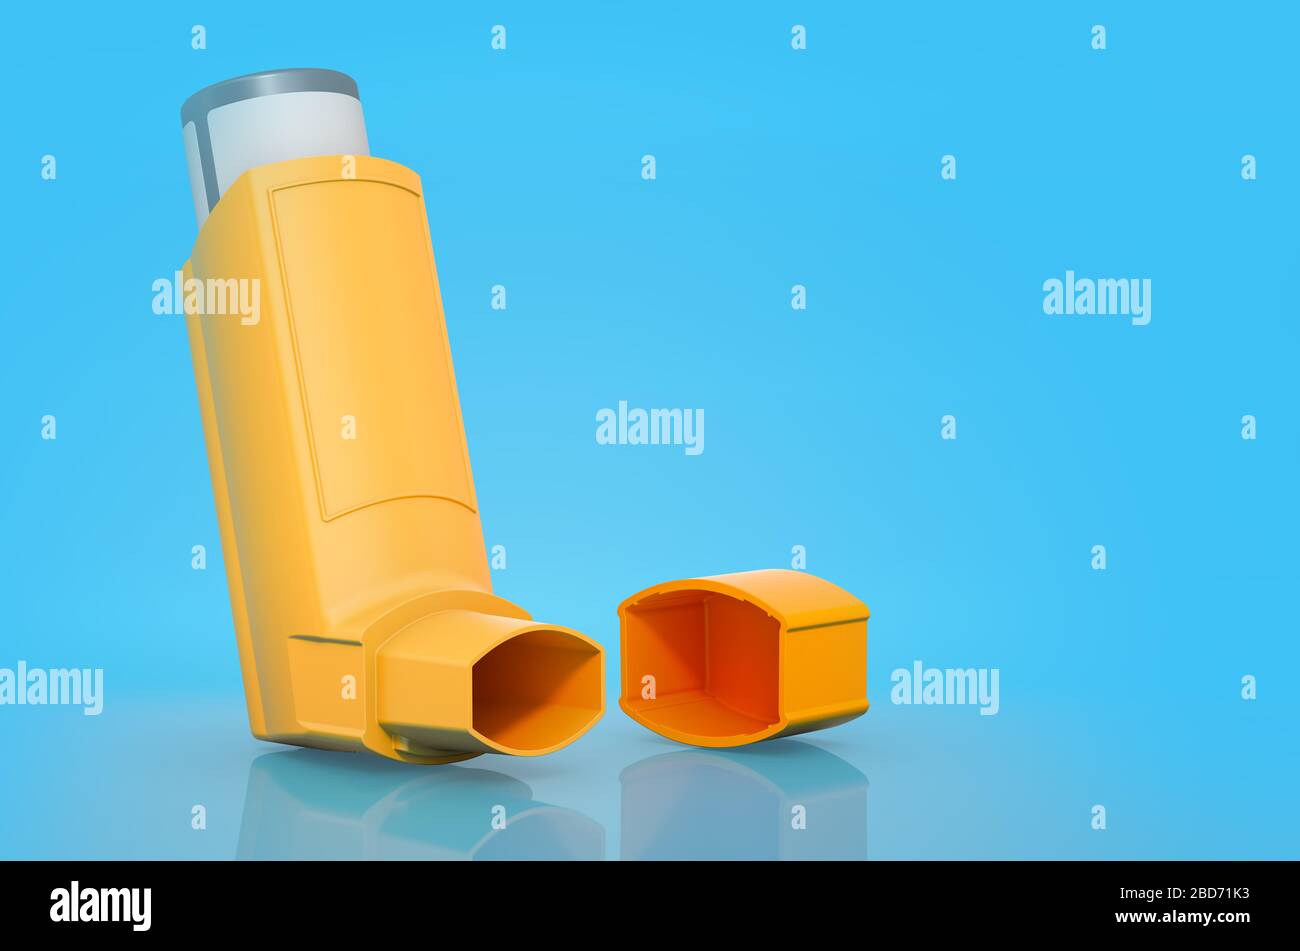 Orange metered-dose inhaler on blue background, 3D rendering Stock Photo